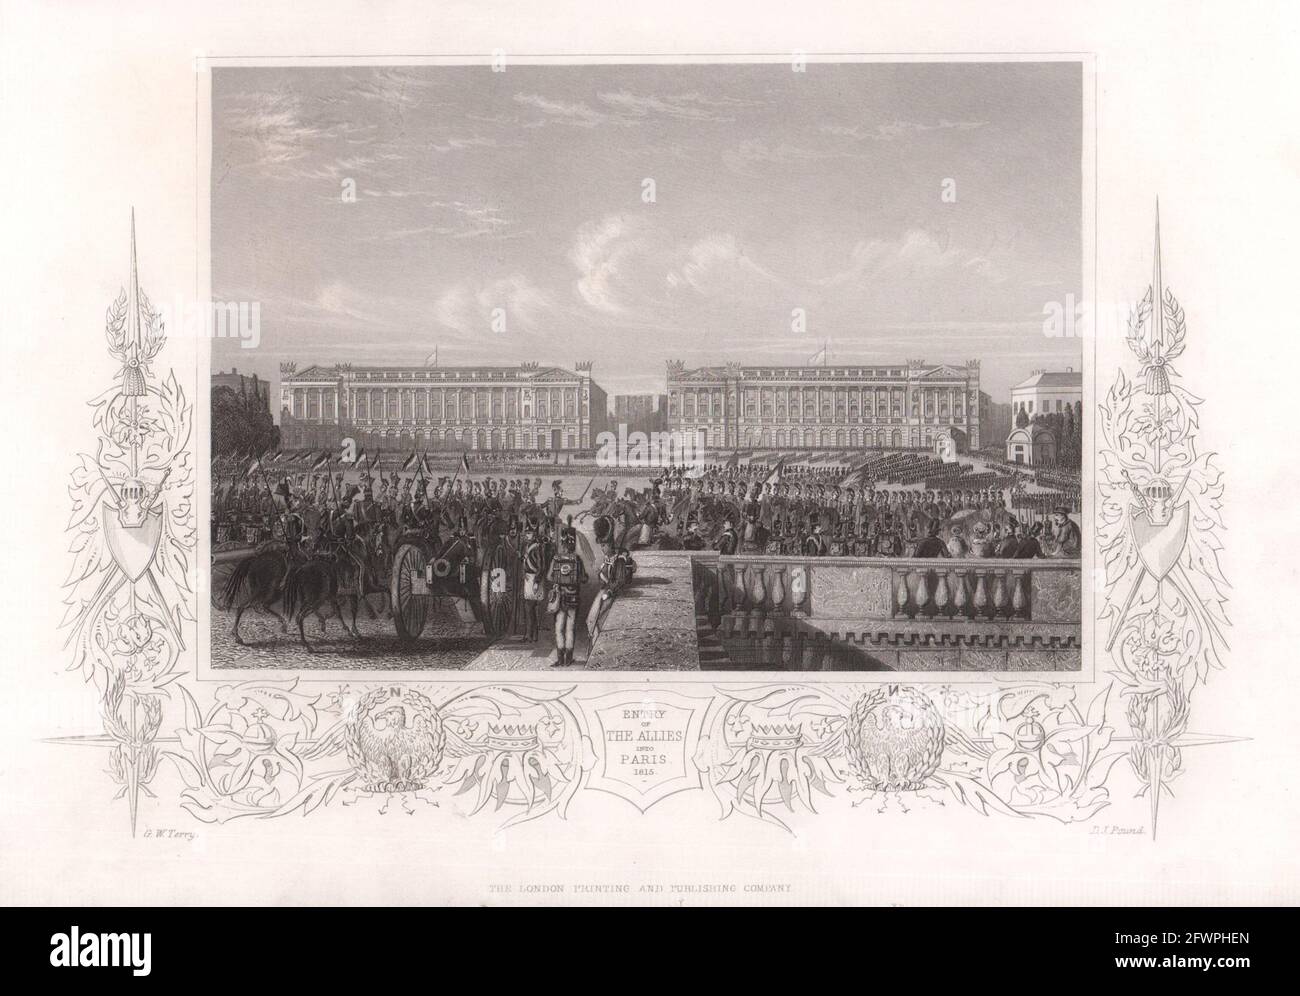 Entrée des alliés à Paris 1815. Guerres napoléoniennes. VIEUX imprimé TALLIS c1855 Banque D'Images